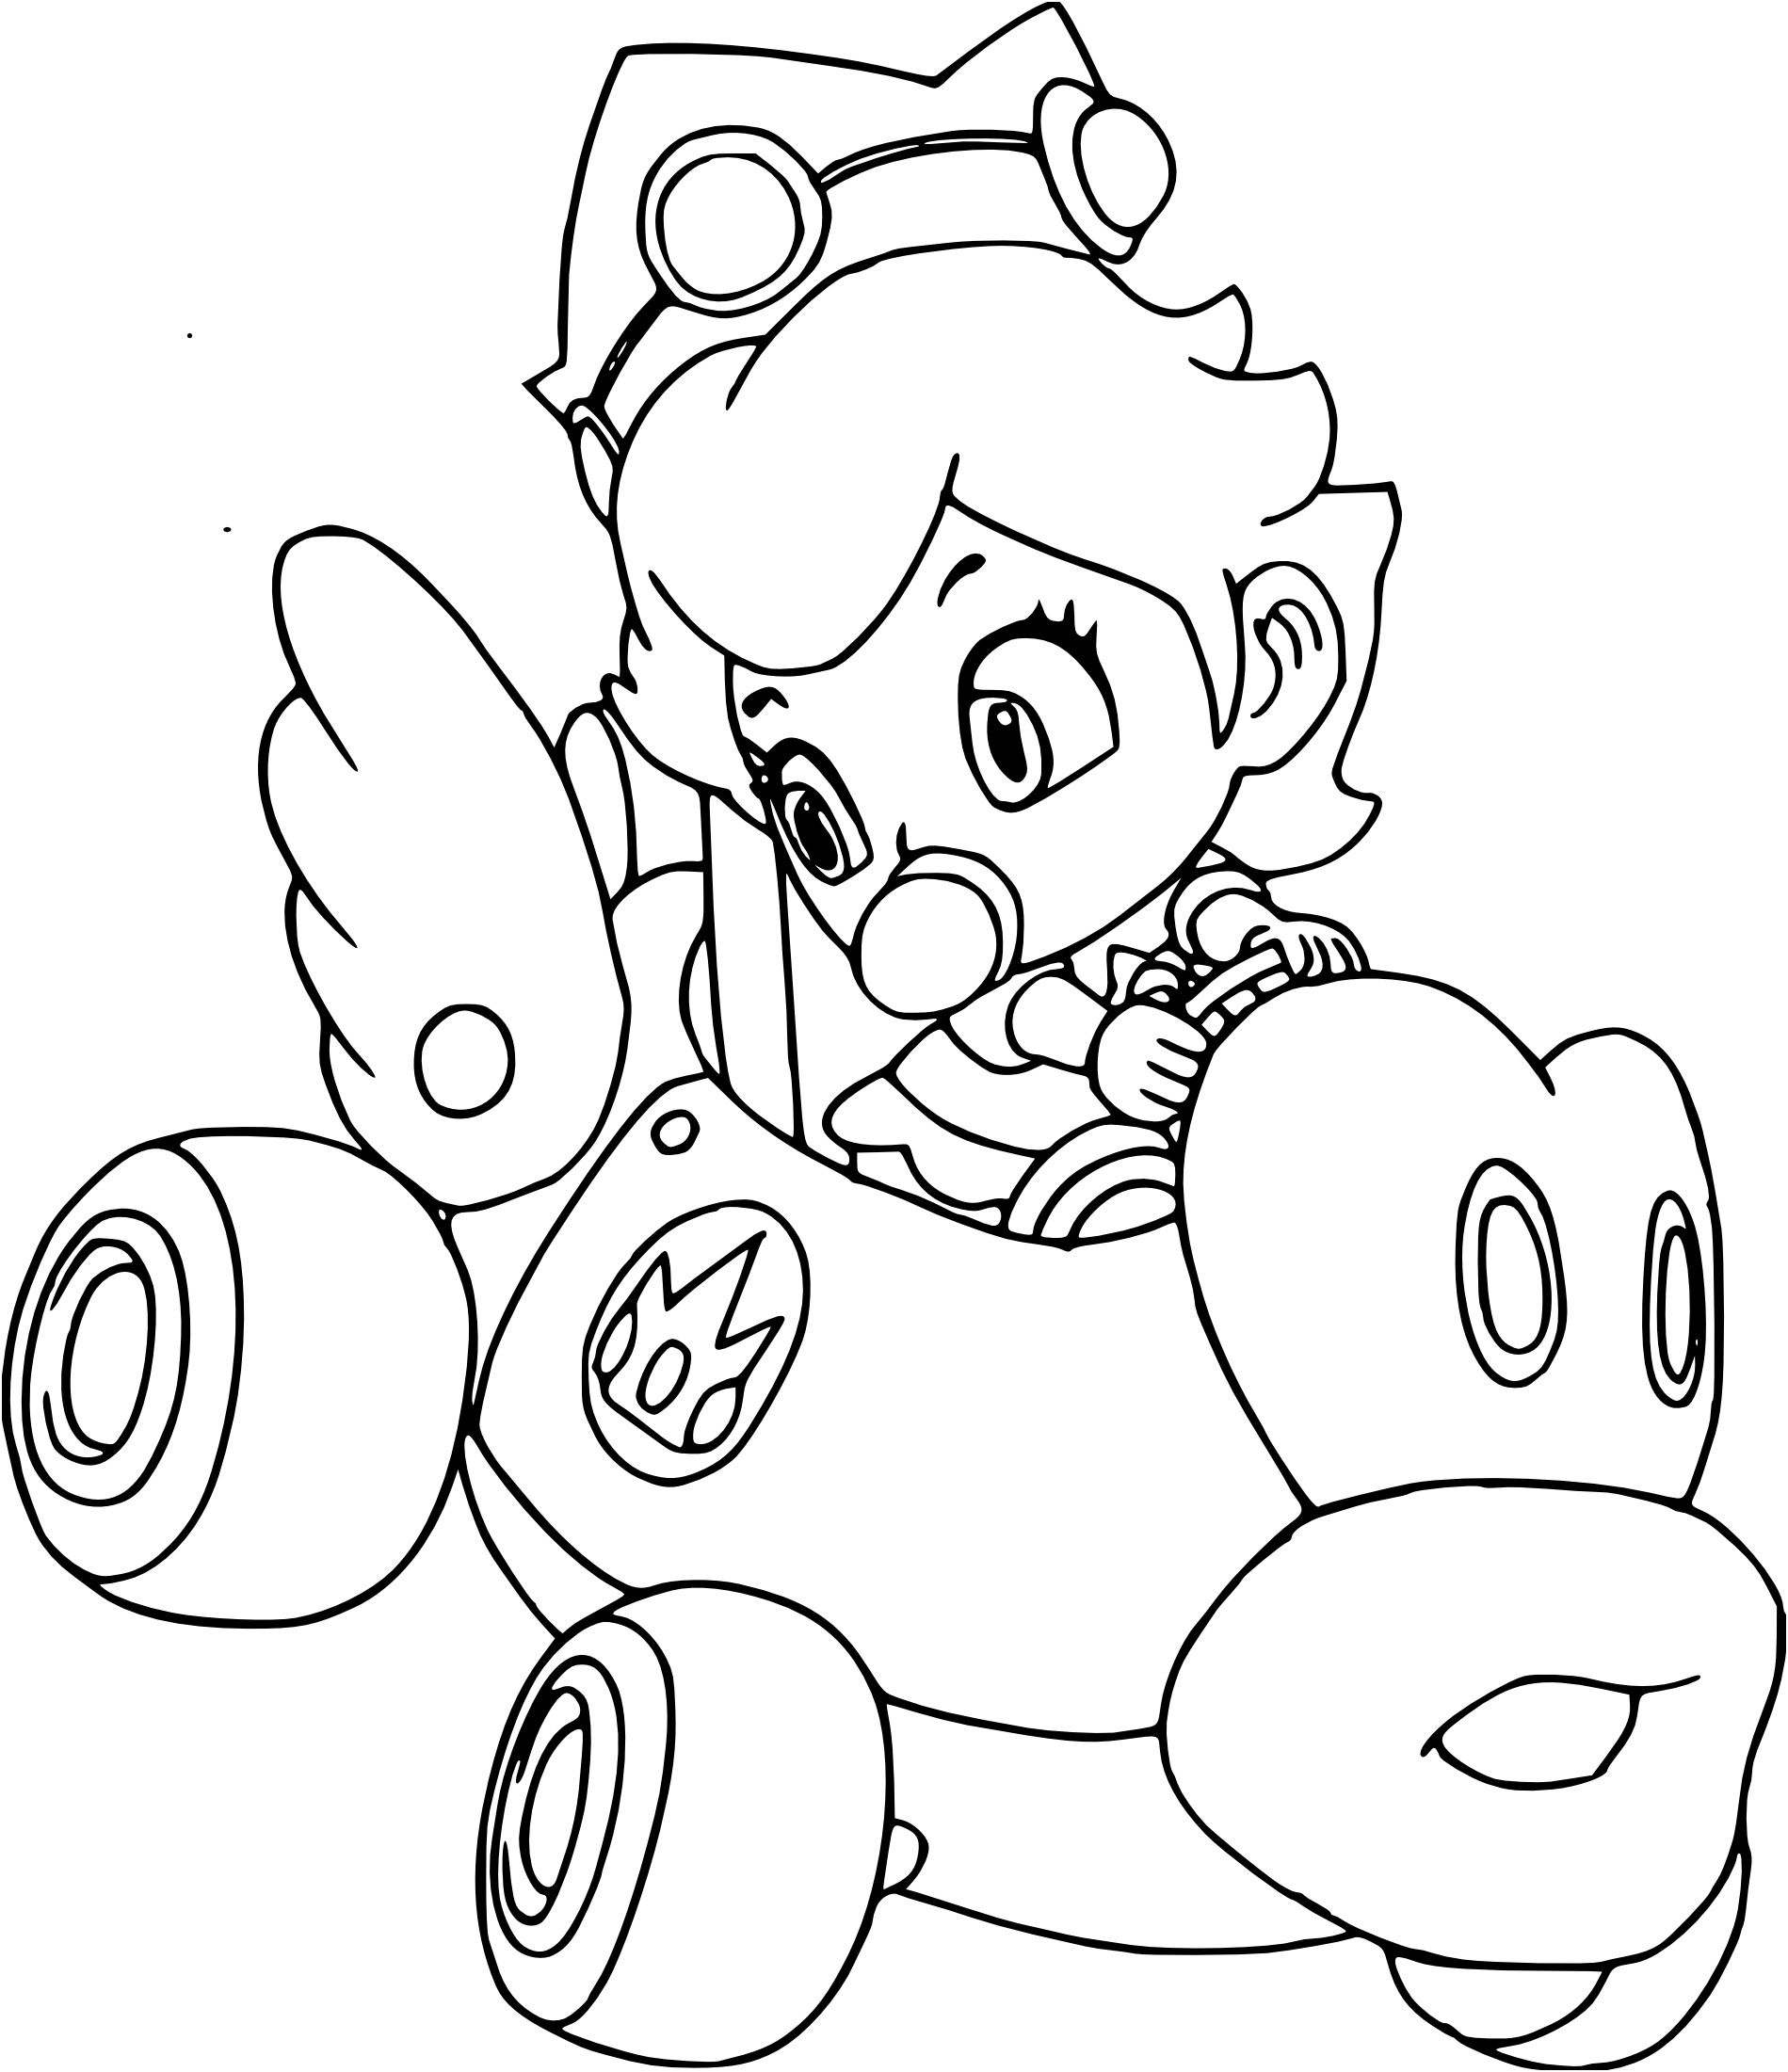 Coloriage Mario Kart Peach - Dessin Facile Pour Les Enfants intérieur Coloriage Peach 